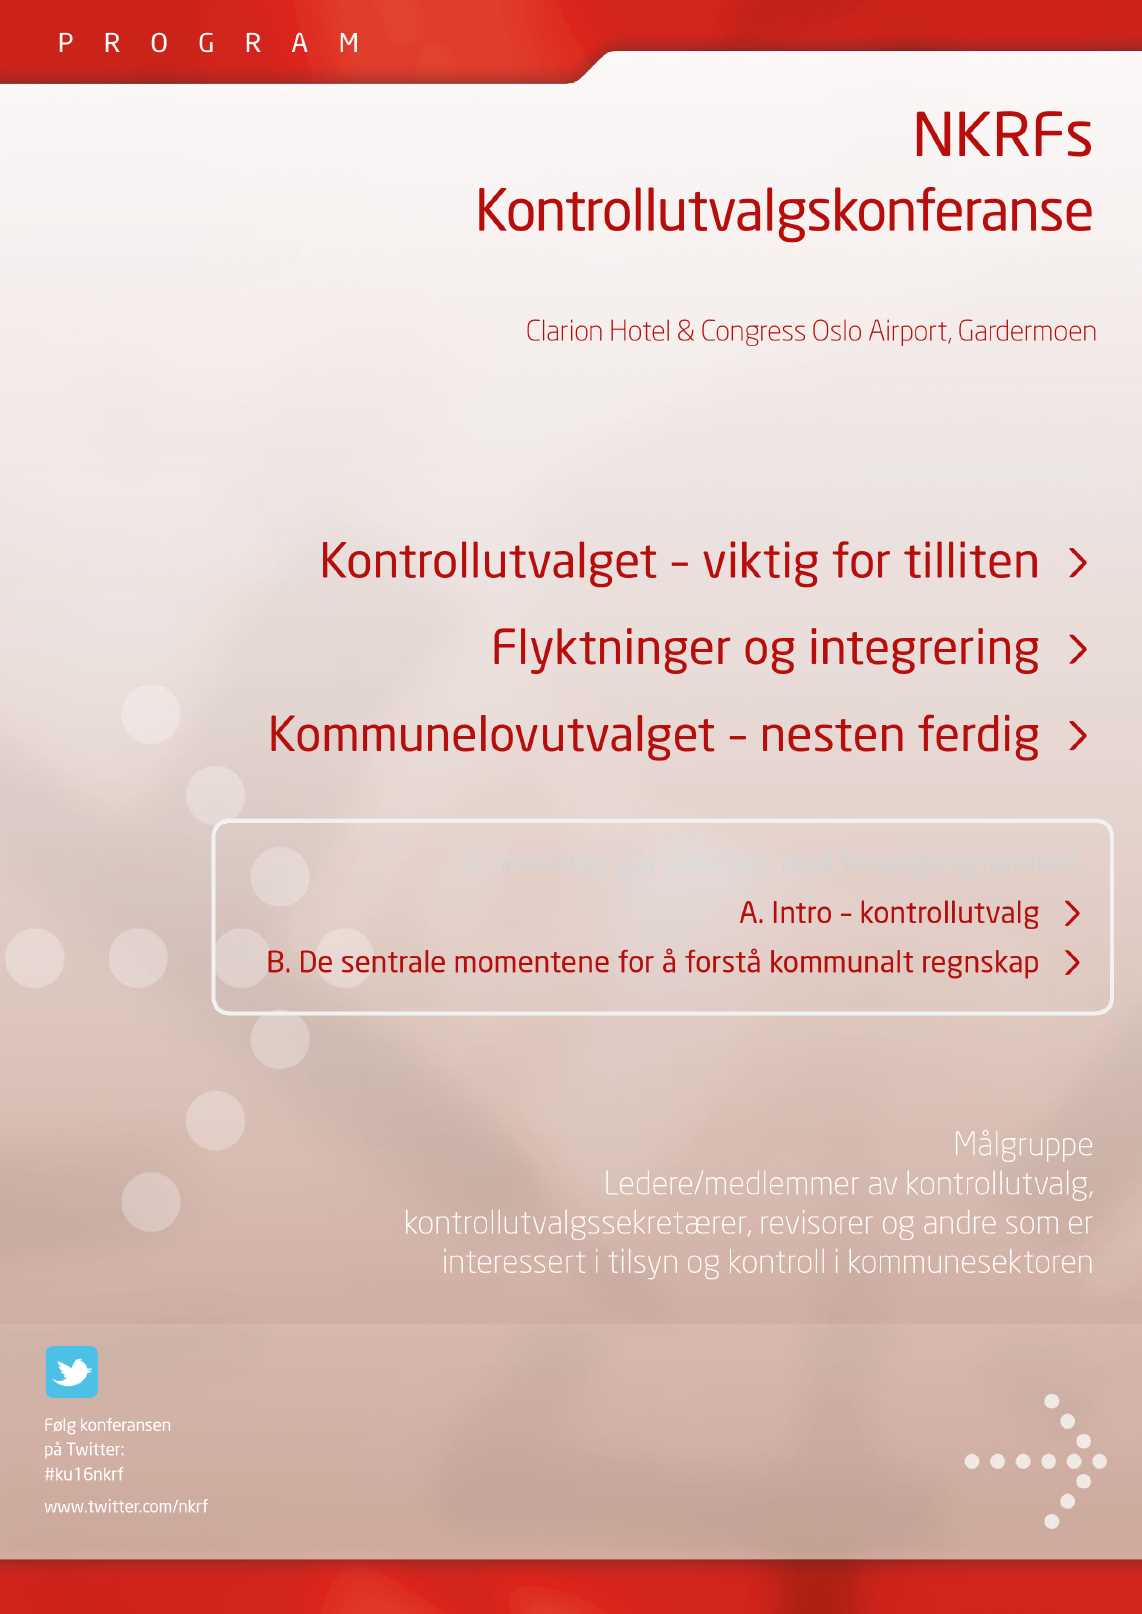 P R O G R A M N K R Fs Kontrollutvalgskonferanse 3-4 februar 2016 Clarion Hotel & Congress Oslo Airport, Gardermoen Hovedtemaer: Kontrollutvalget viktig for tilliten > Flyktninger og integrering >